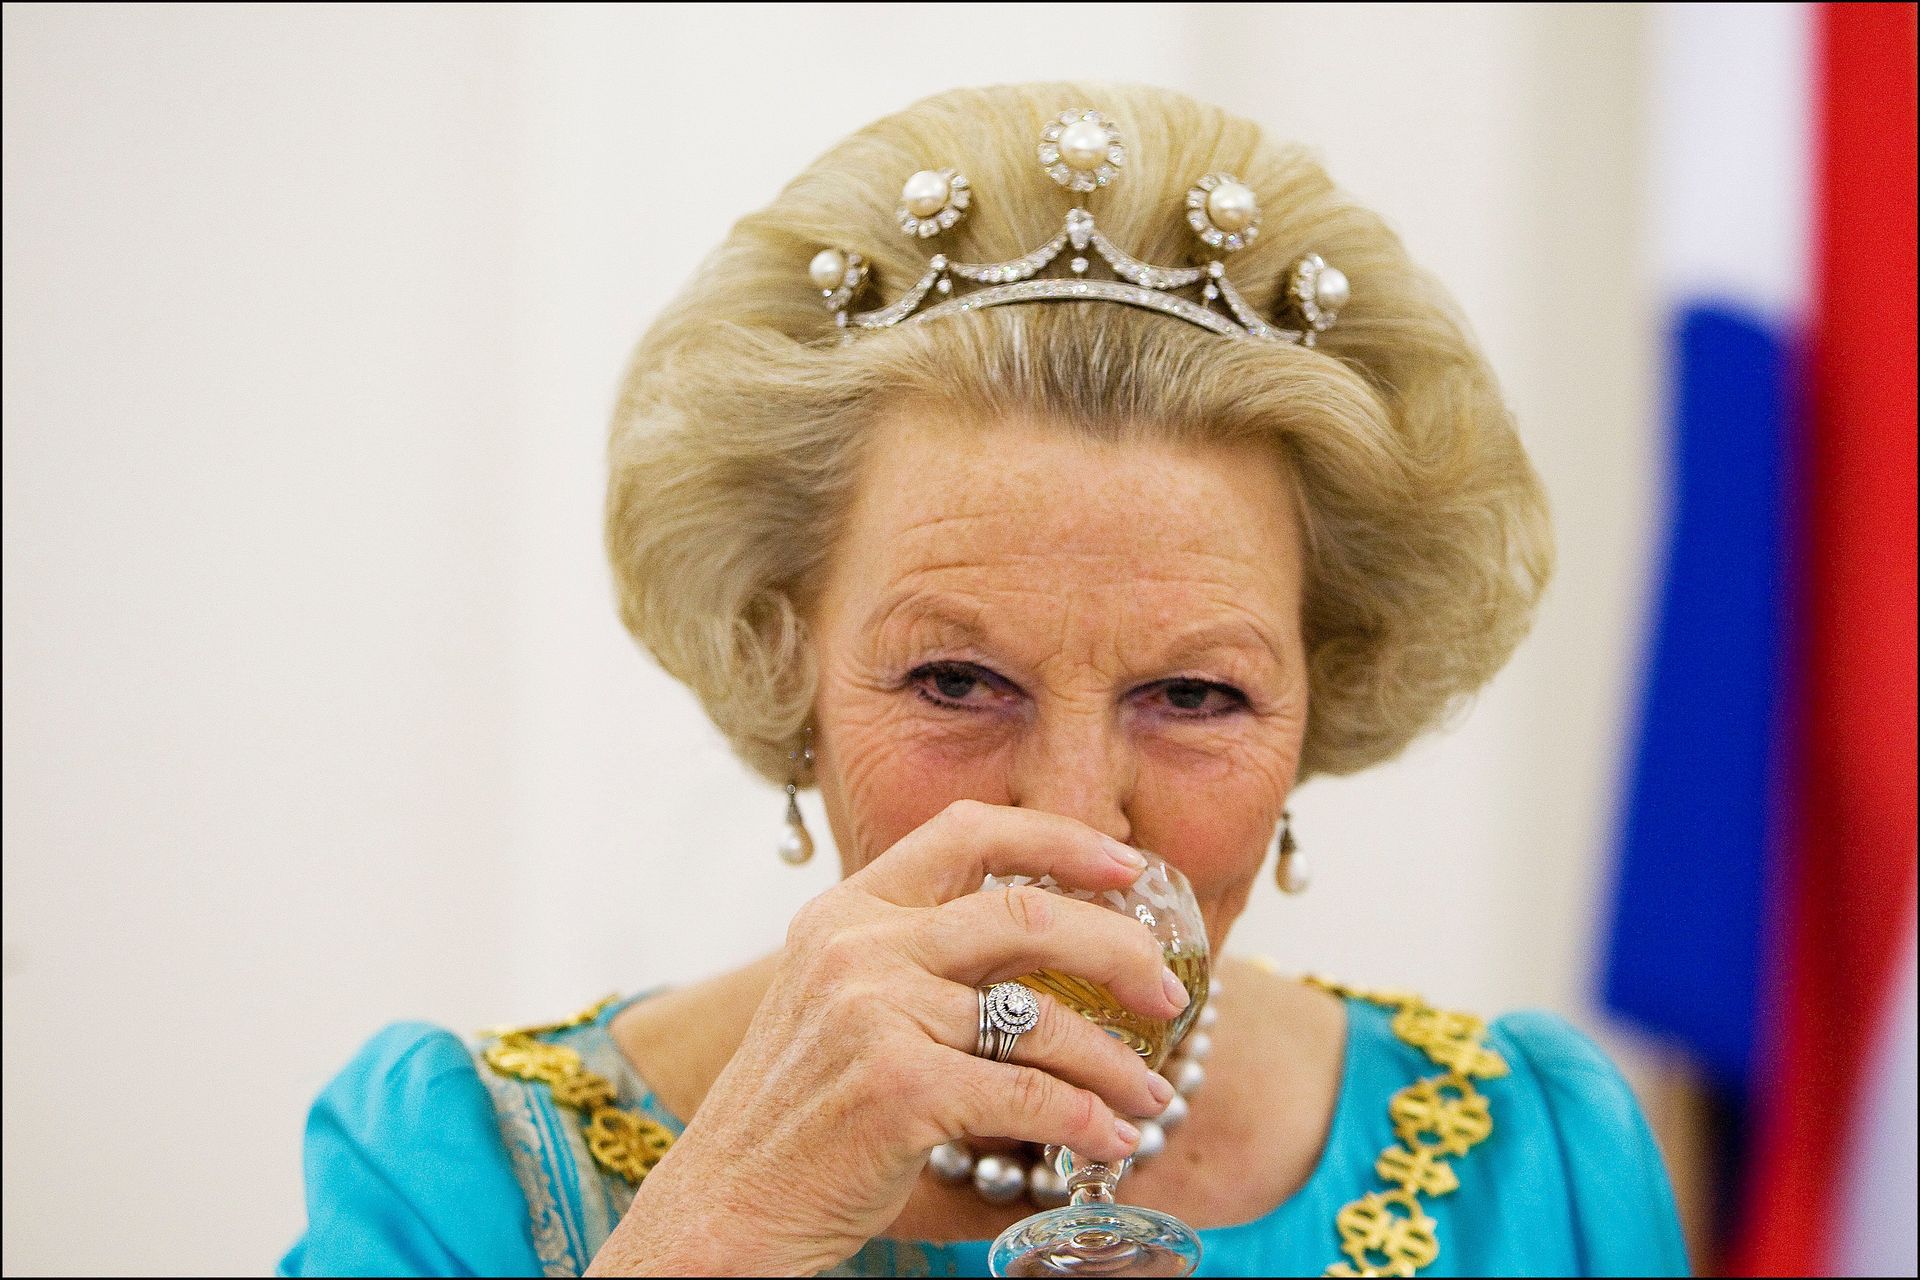 2008: koningin Beatrix neemt een slokje wijn tijdens het staatsbanket. Ze brengt een staatsbezoek aan de Republiek Litouwen.